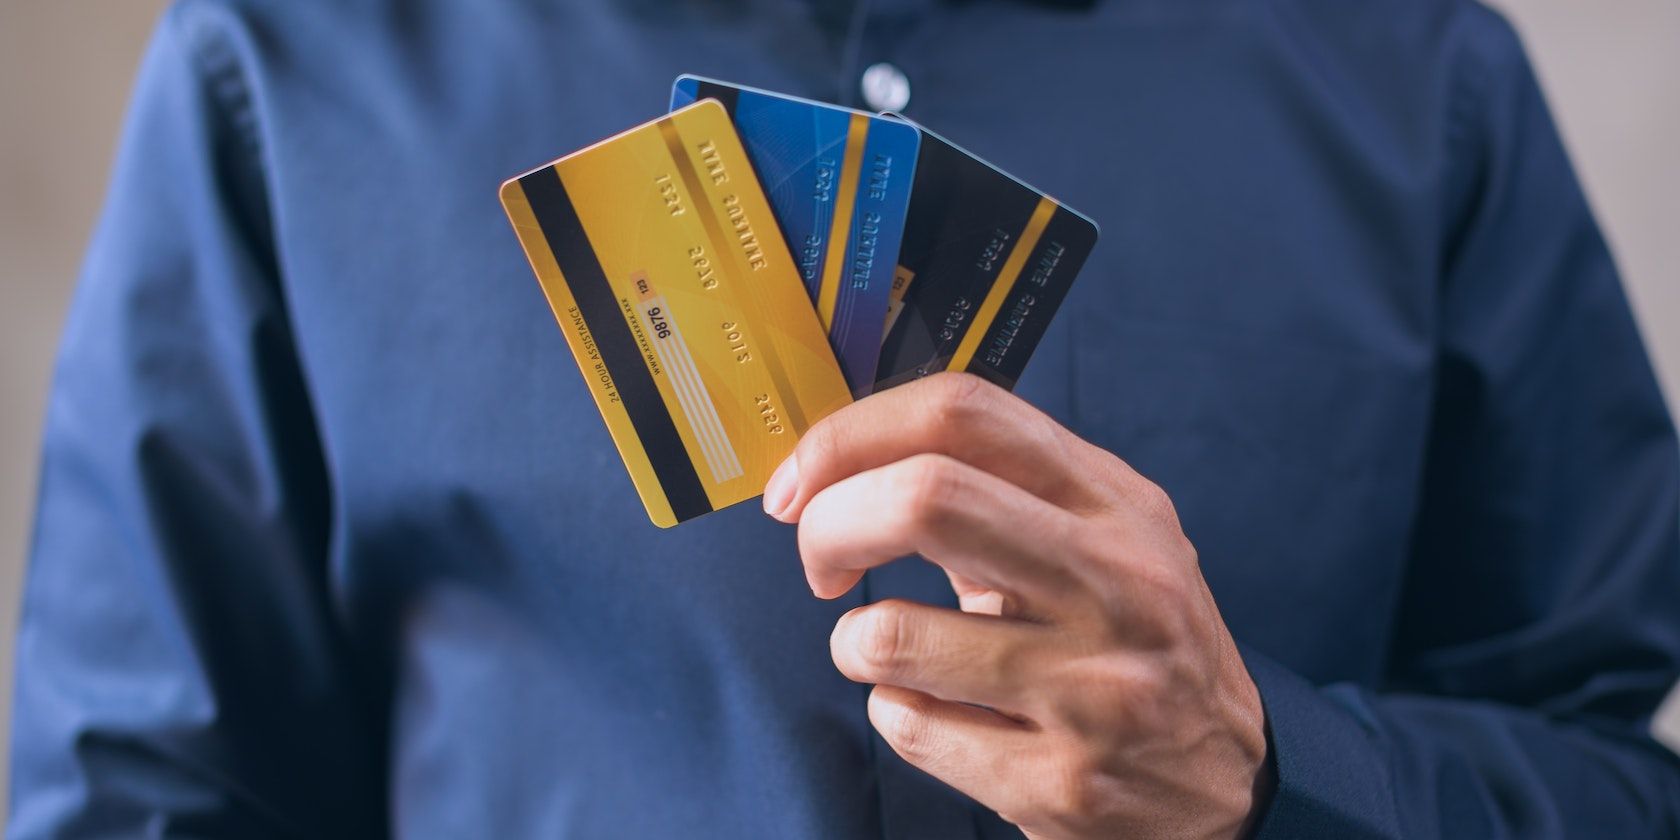 Cận cảnh bàn tay của một người đàn ông cầm một loạt thẻ ghi nợ